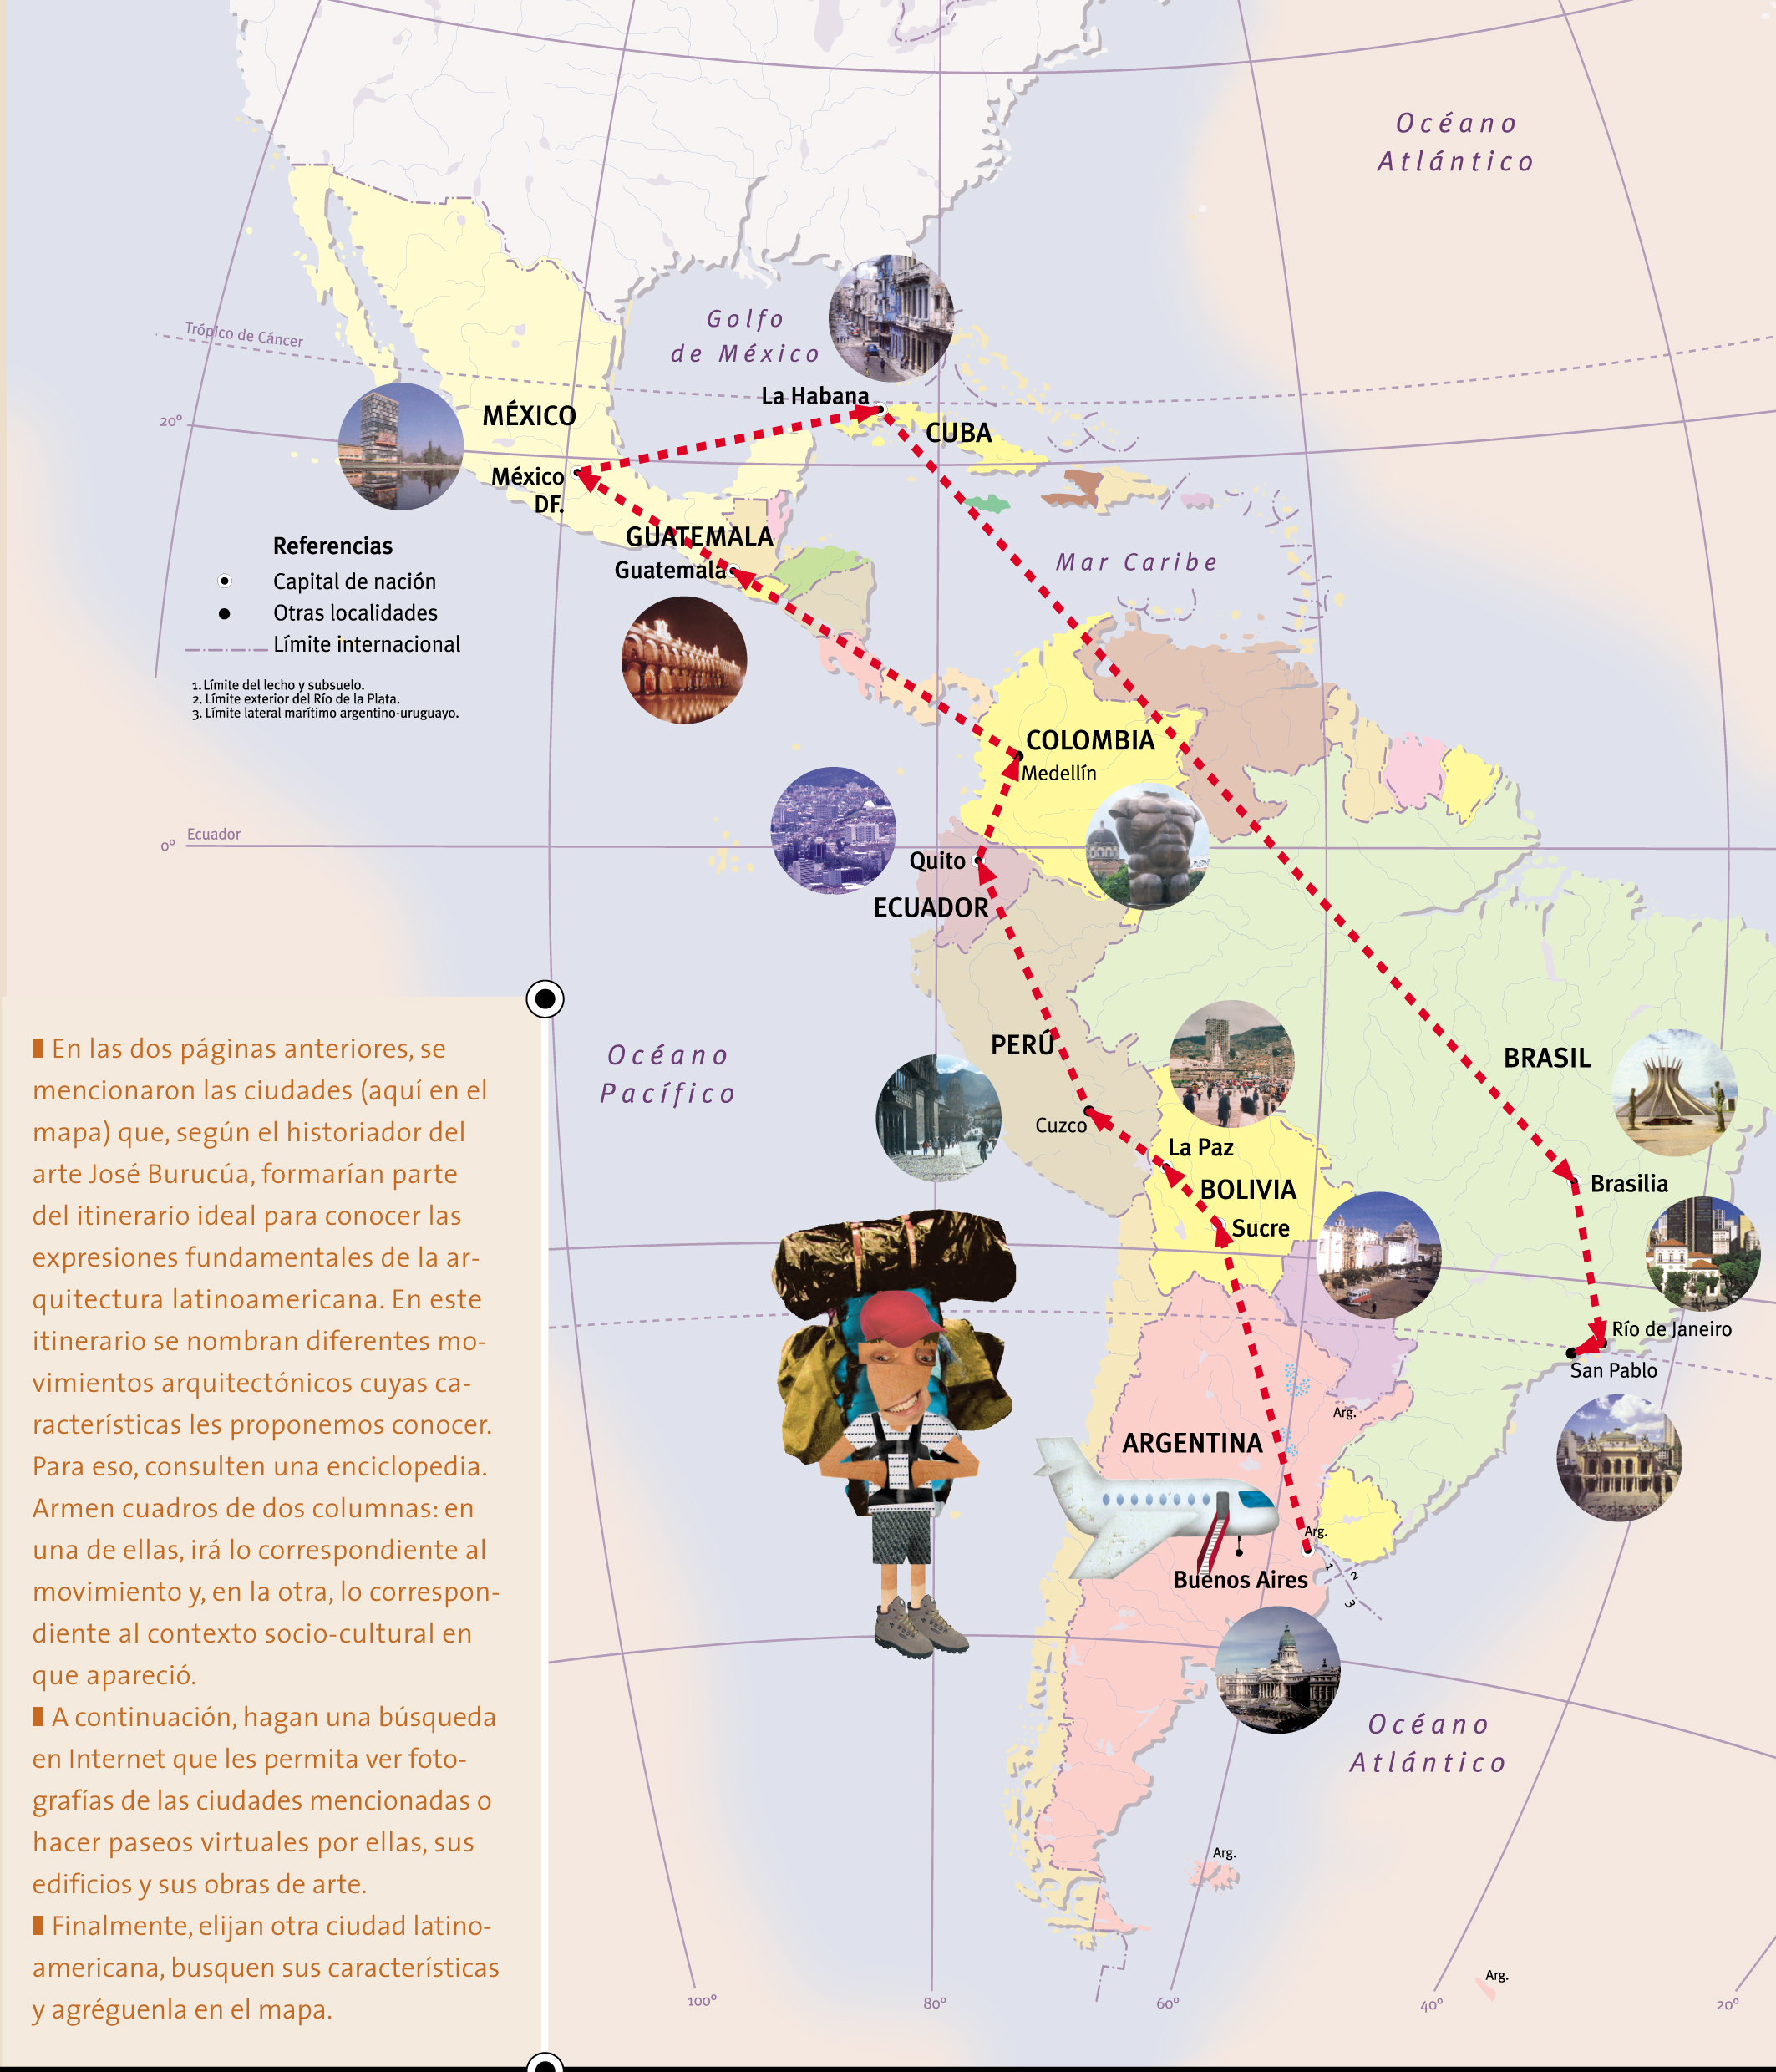 Itinerario ideal para conocer las expresiones fundamentales de la arquitectura latinoamericana